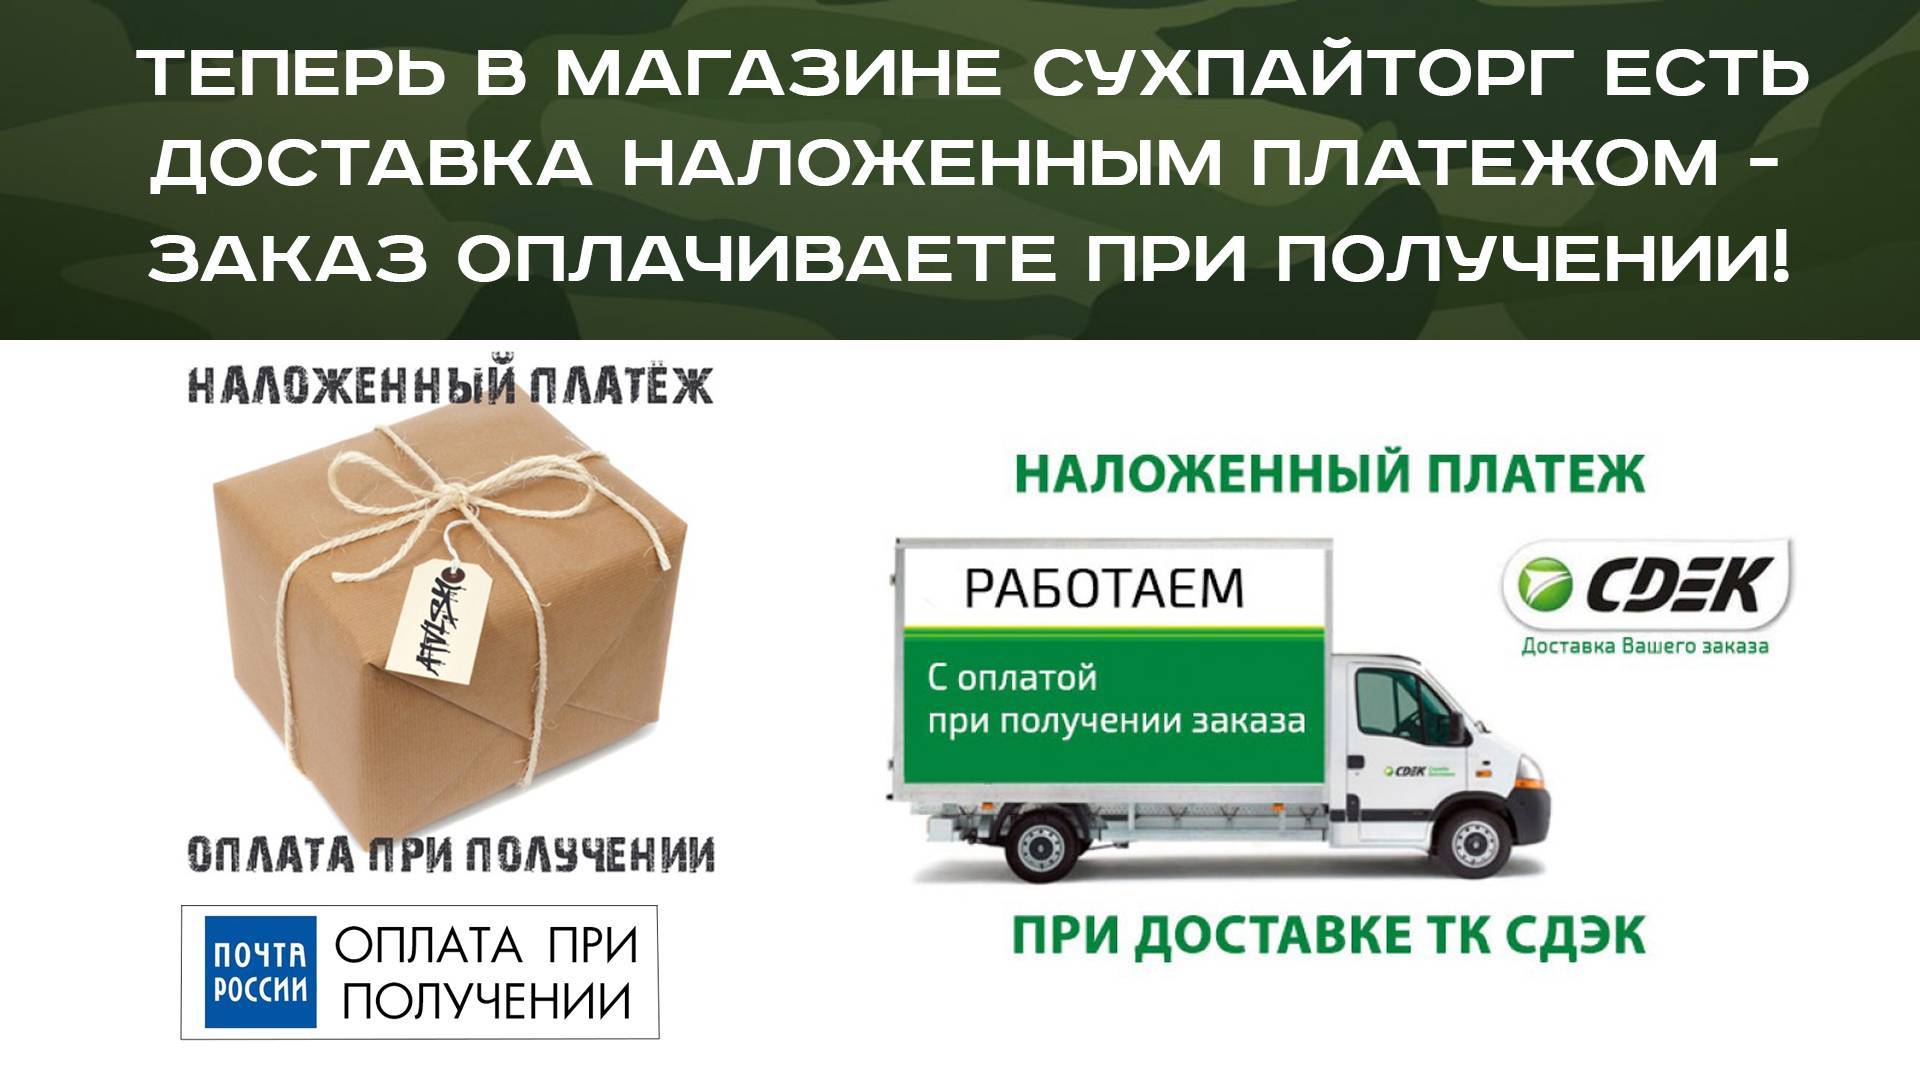 Почта россии – как рассчитать стоимость отправки посылки